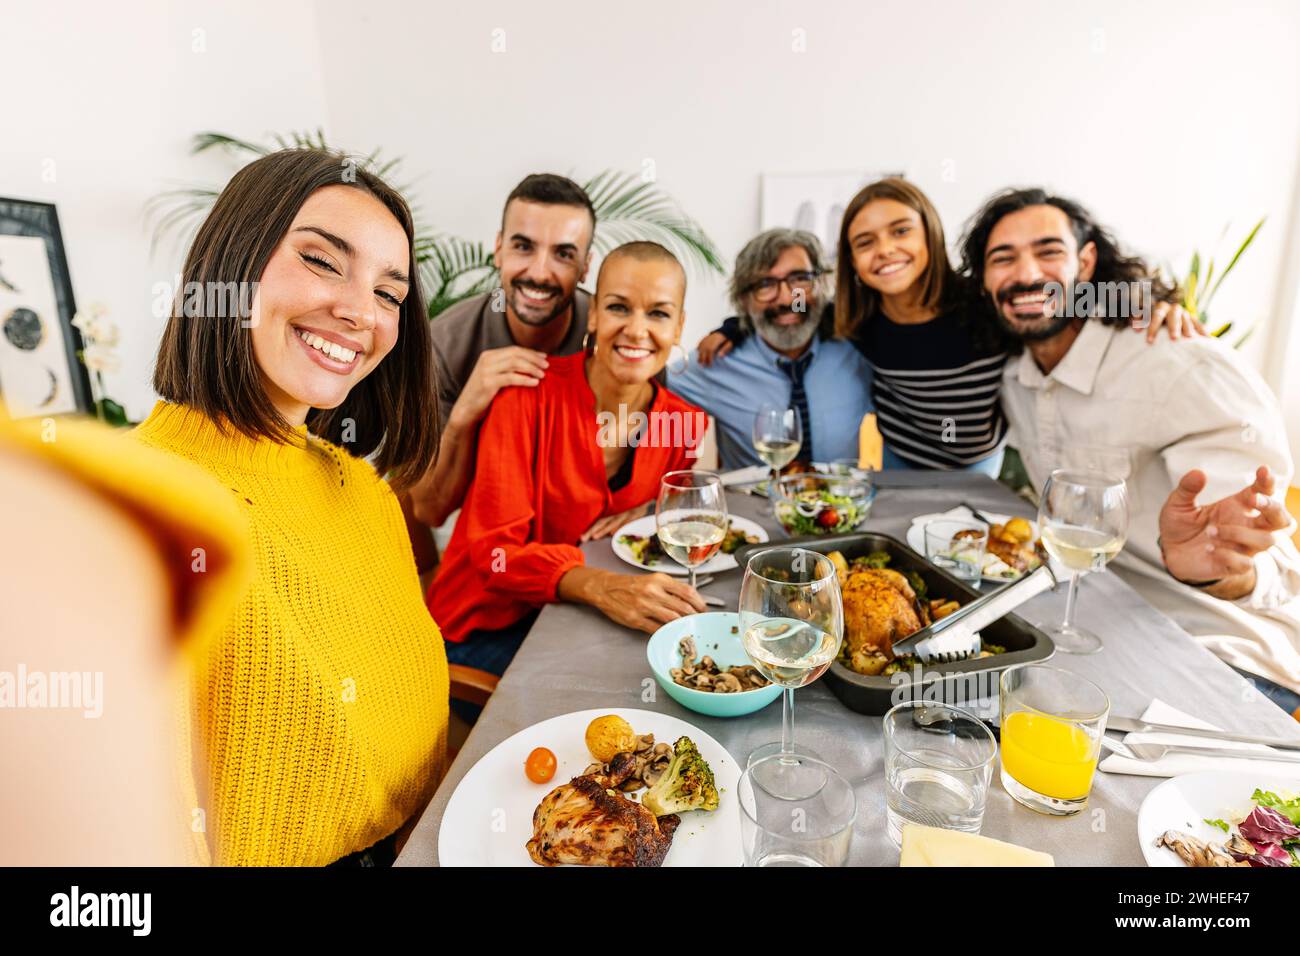 Gruppo di famiglie multigenerazionali che si godono una cena e fanno selfie insieme Foto Stock